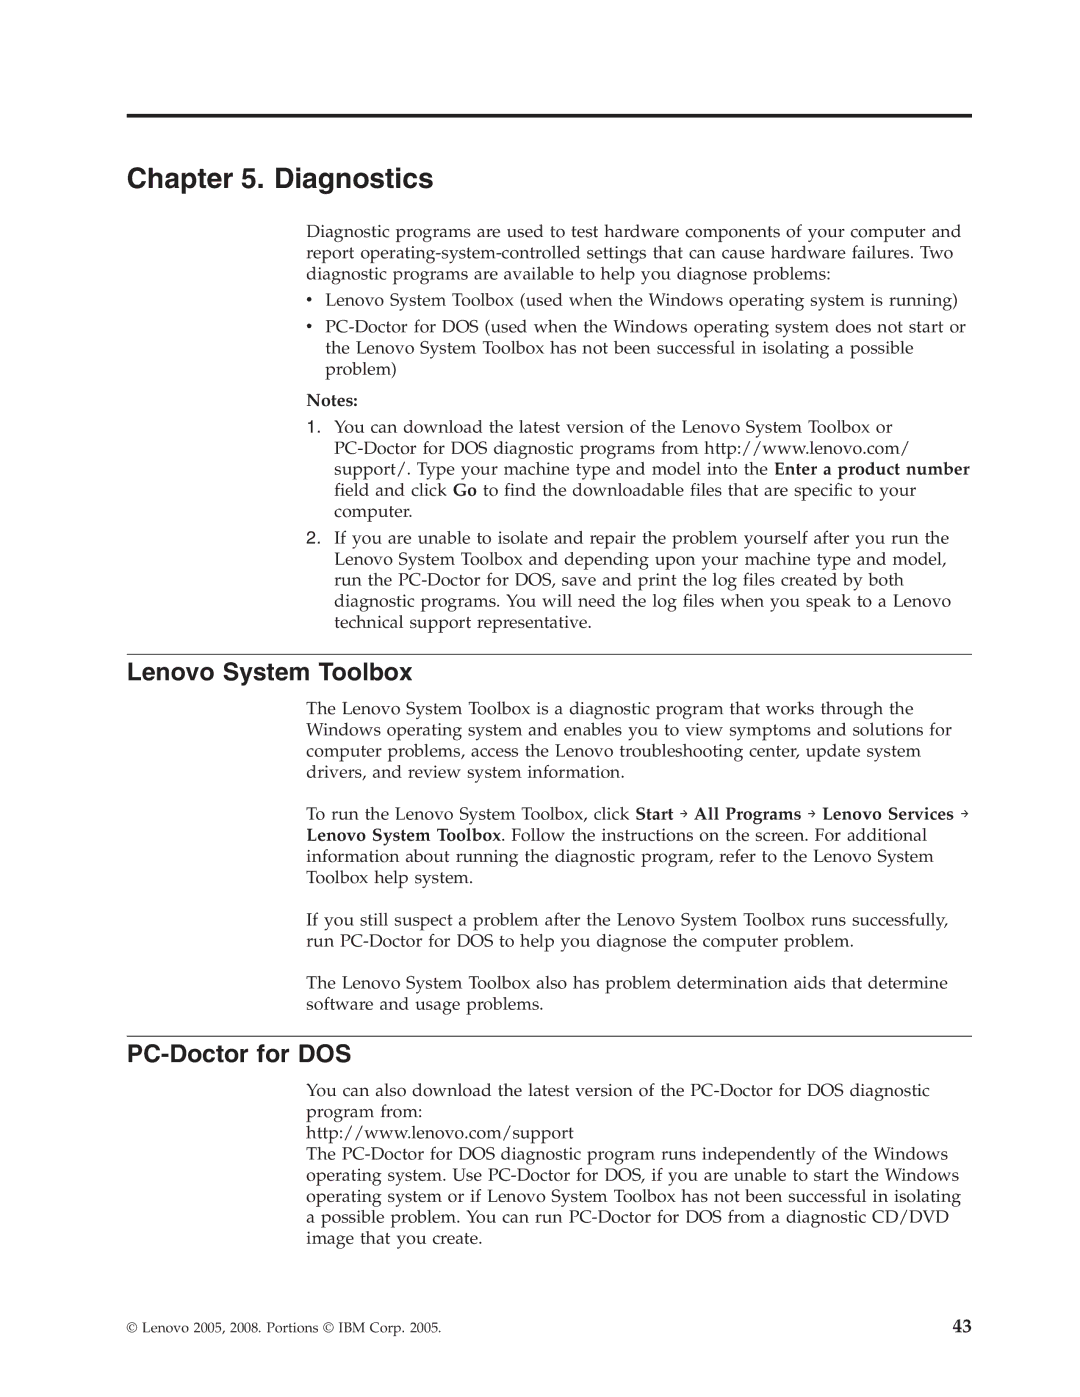 Lenovo E200 manual Diagnostics, Lenovo System Toolbox, PC-Doctor for DOS 